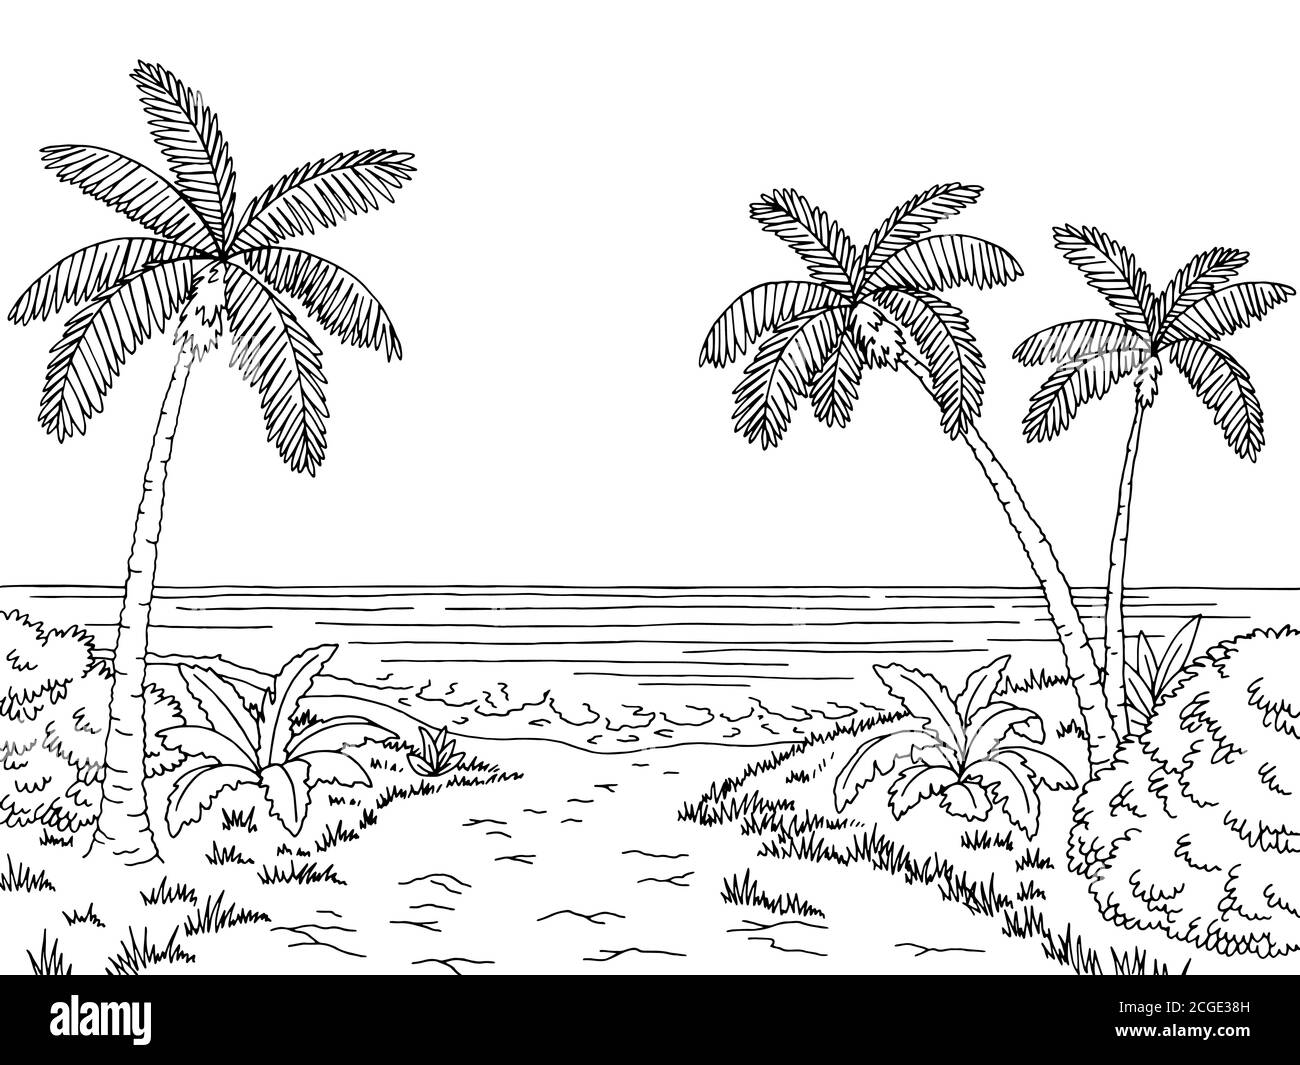 Silueta paisaje mar blanco y negro Imágenes vectoriales de stock - Alamy